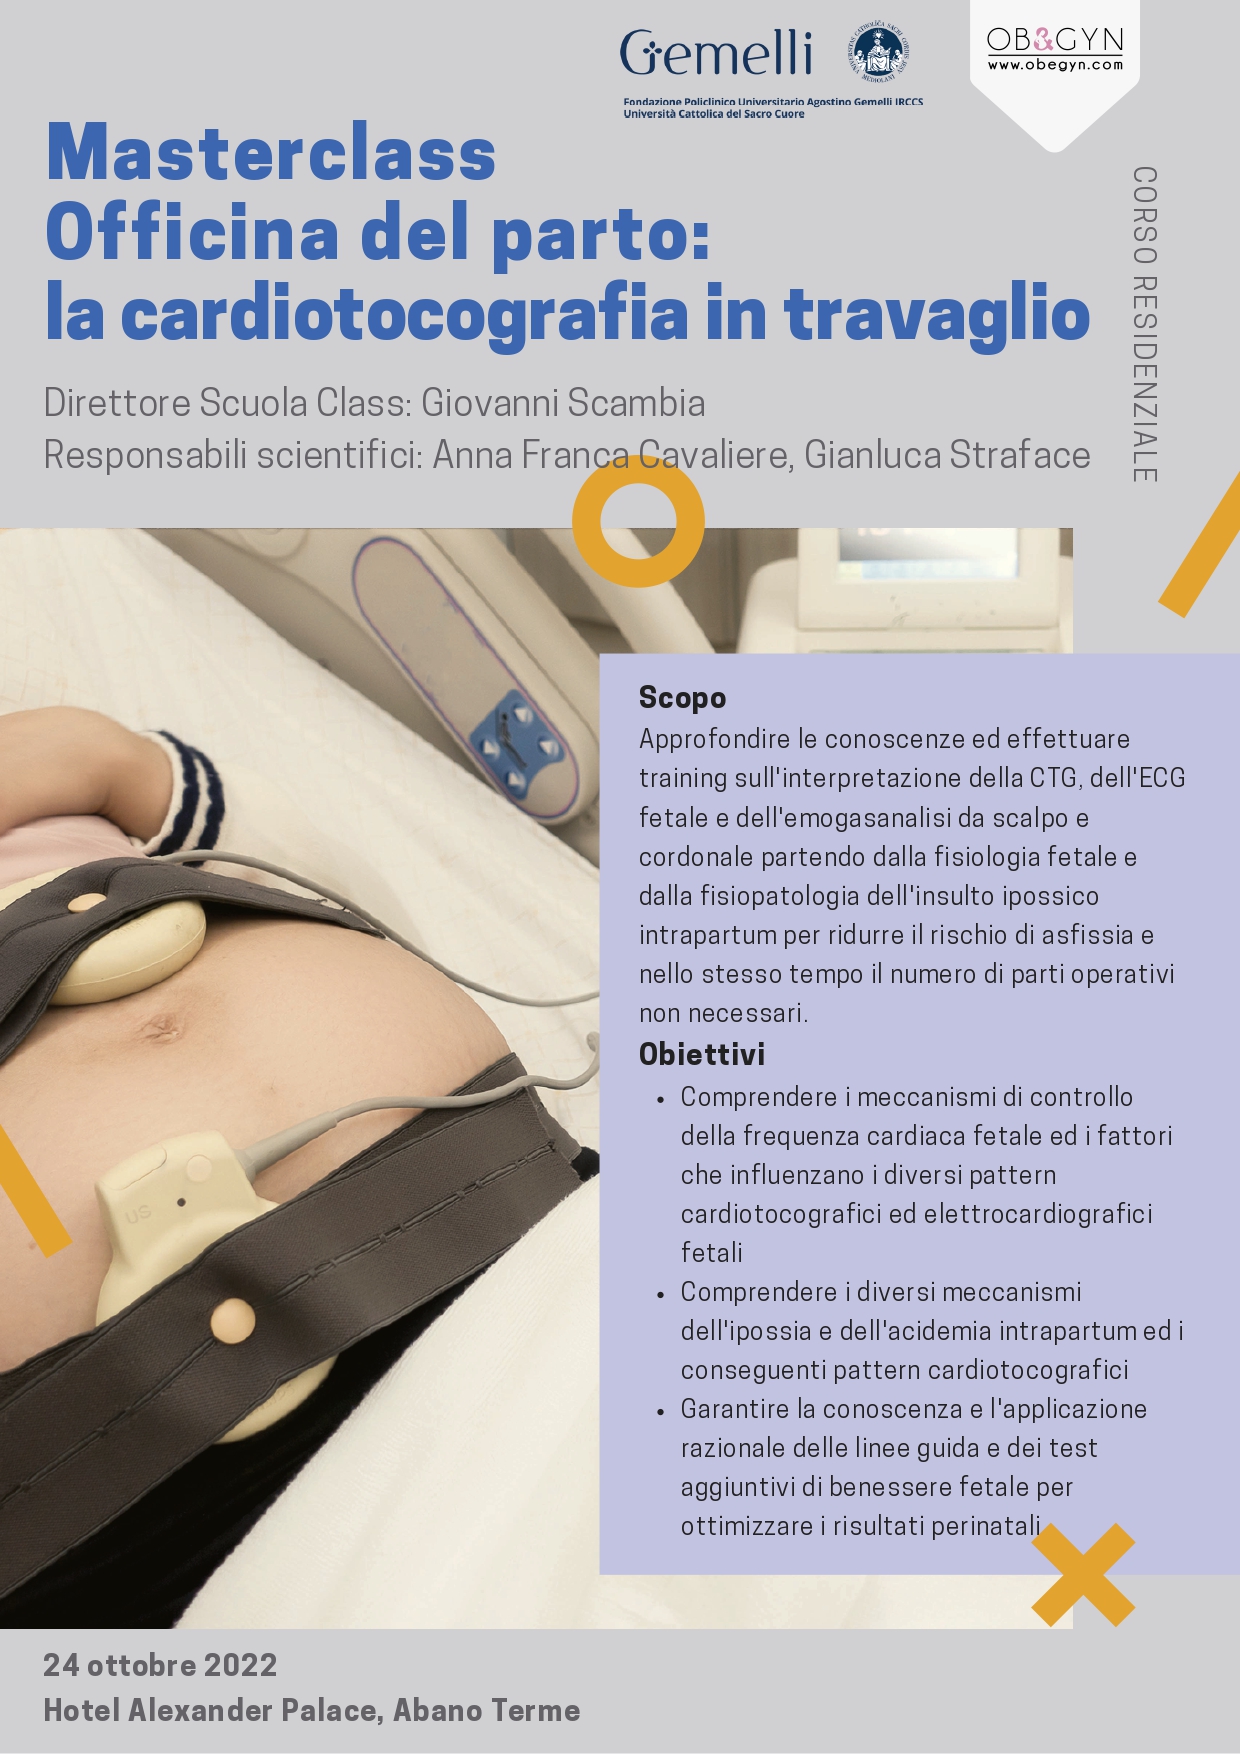 Programma Masterclass Officina del parto: la cardiotocografia in travaglio - Abano Terme